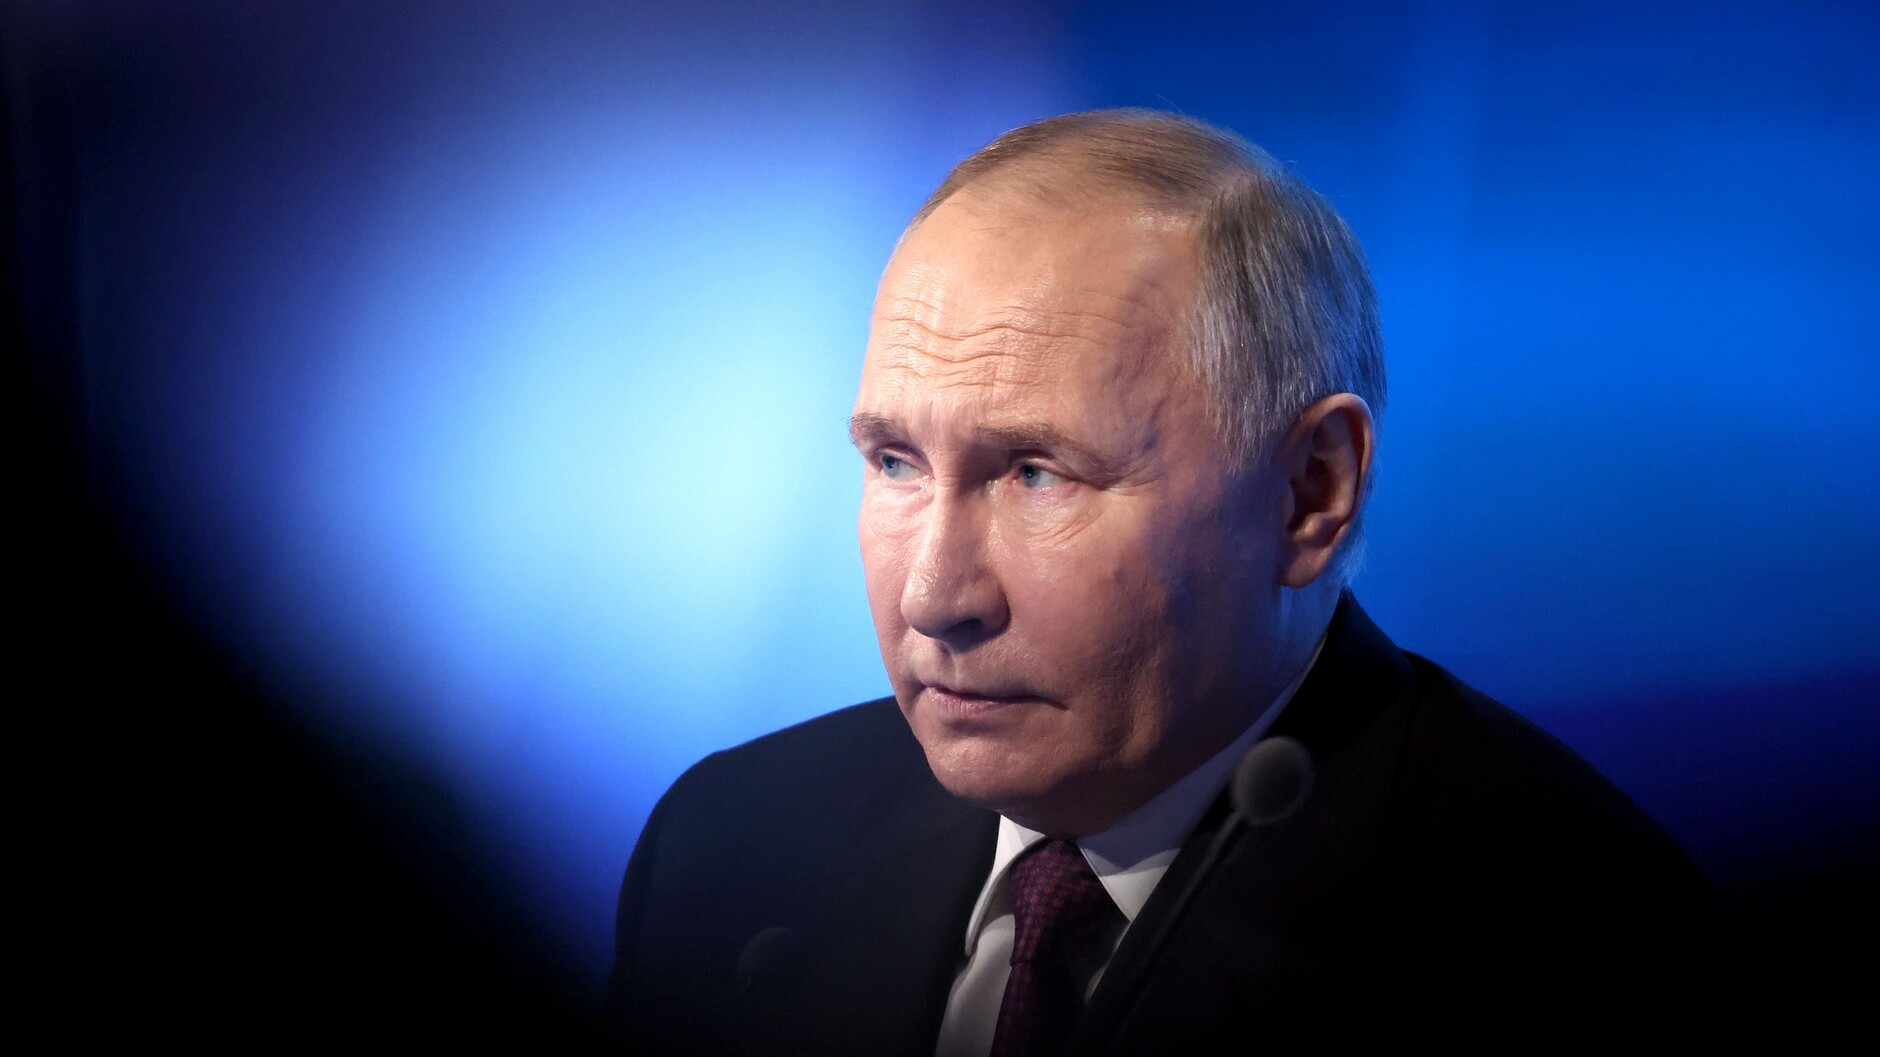 Путин: Россия хочет урегулировать конфликт на Украине мирно и открыта к диалогу